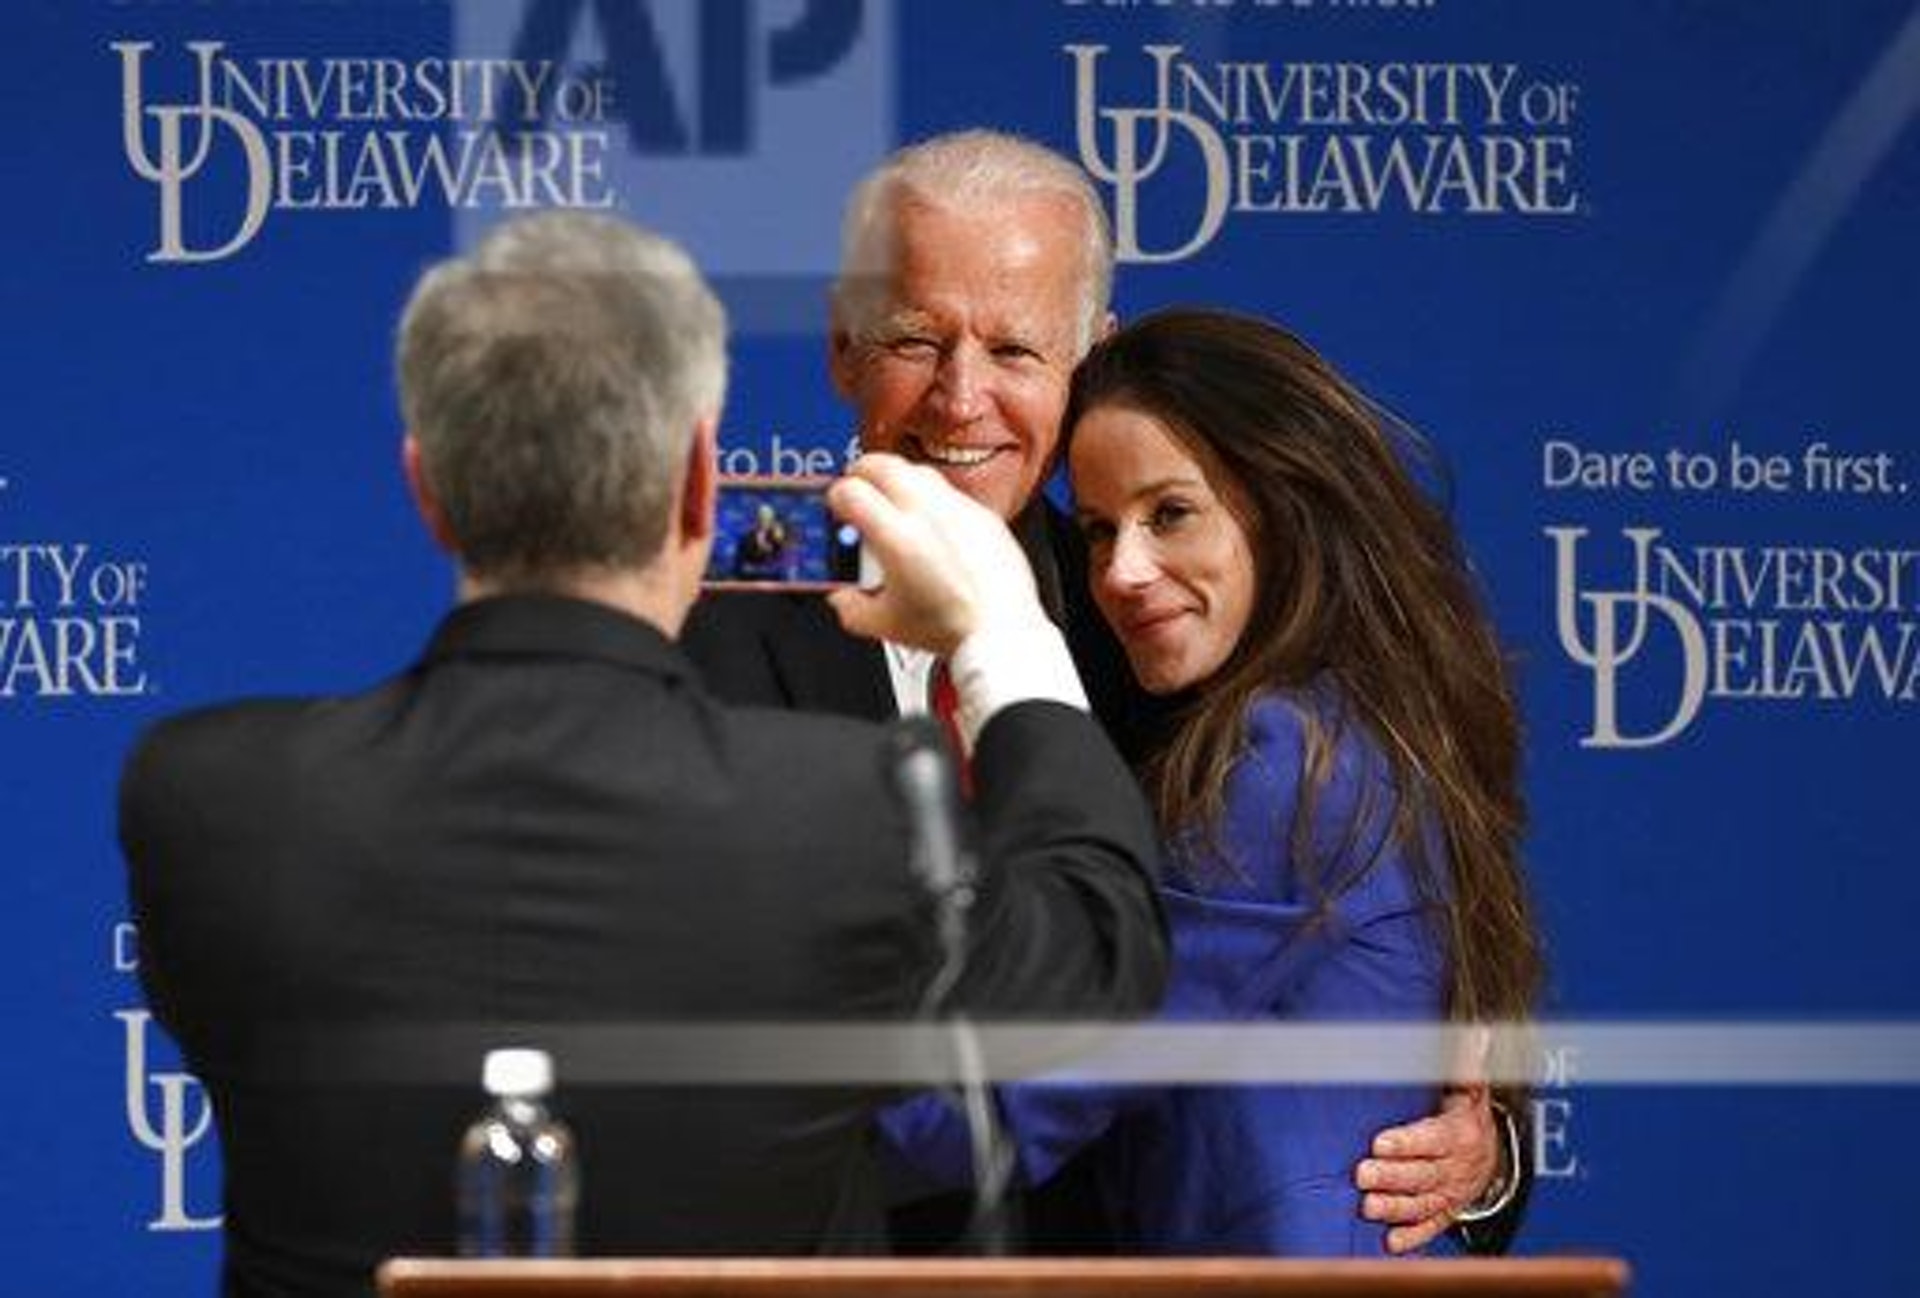 2017年3月13日，前副總統拜登與他的女兒阿什莉在特拉華大學宣布成立拜登研究所（Biden Institute）。 圖文發佈會後父女兩人正在合影。(AP)